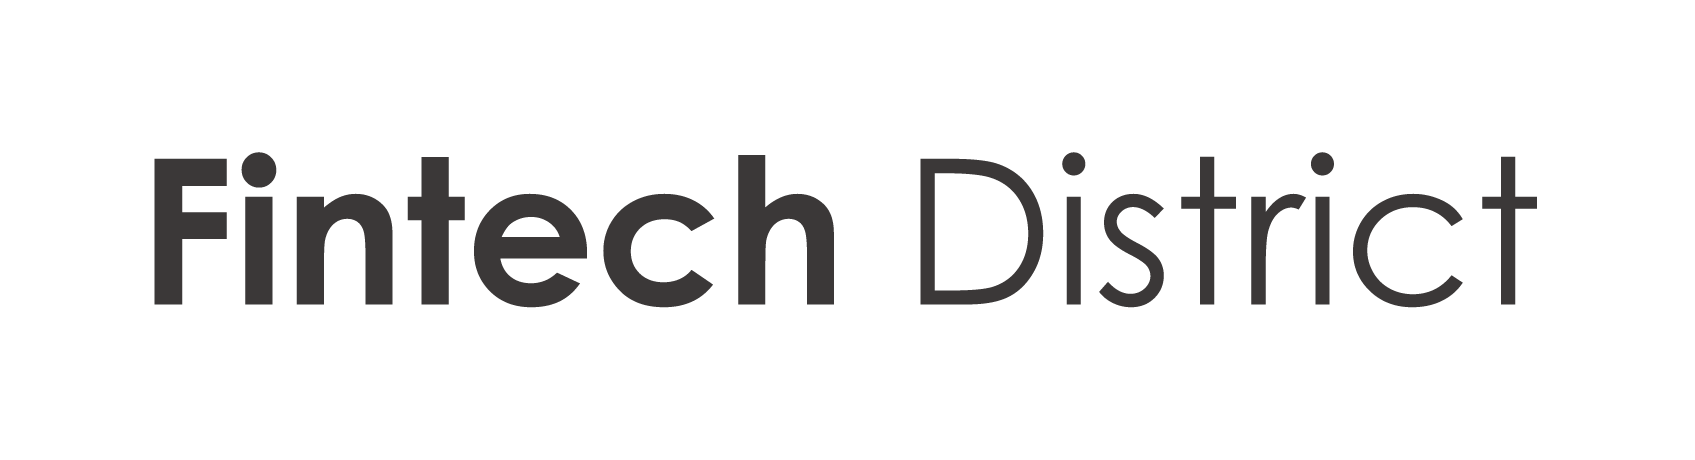 Fintech District